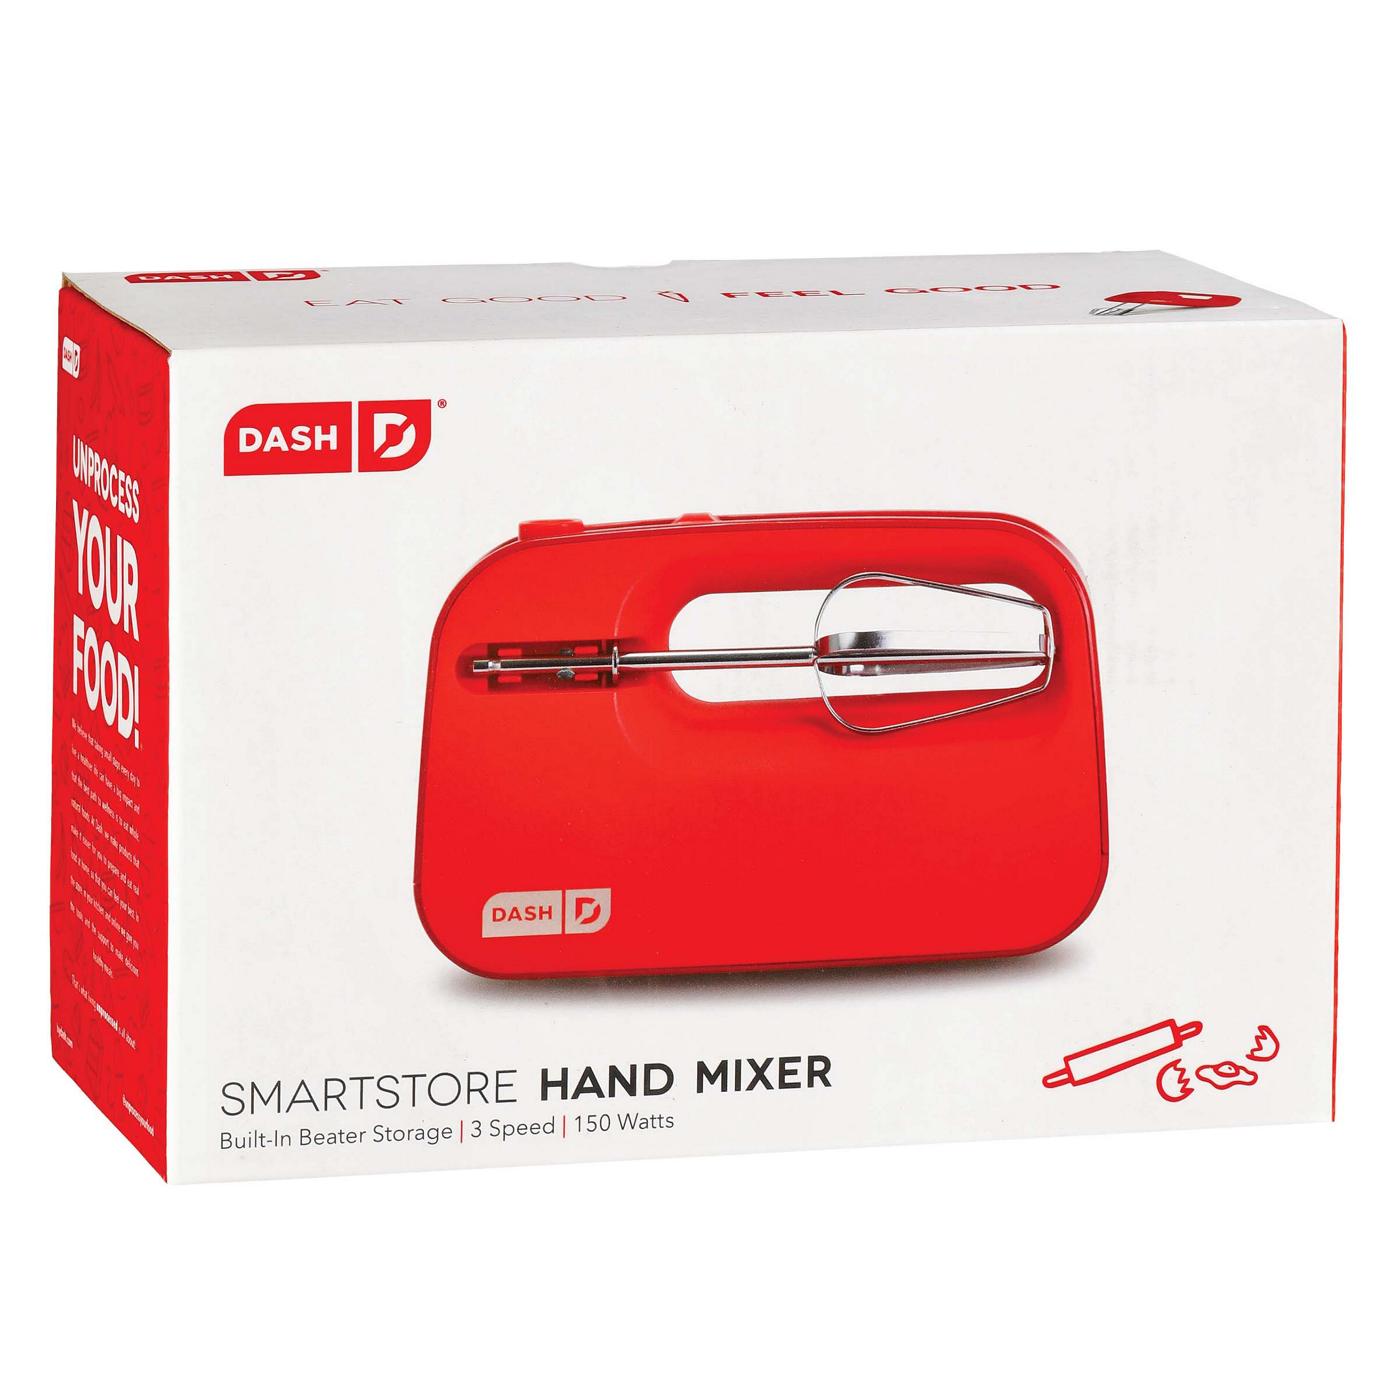 Dash Hand Mixer Red Smartstore 3 Speed